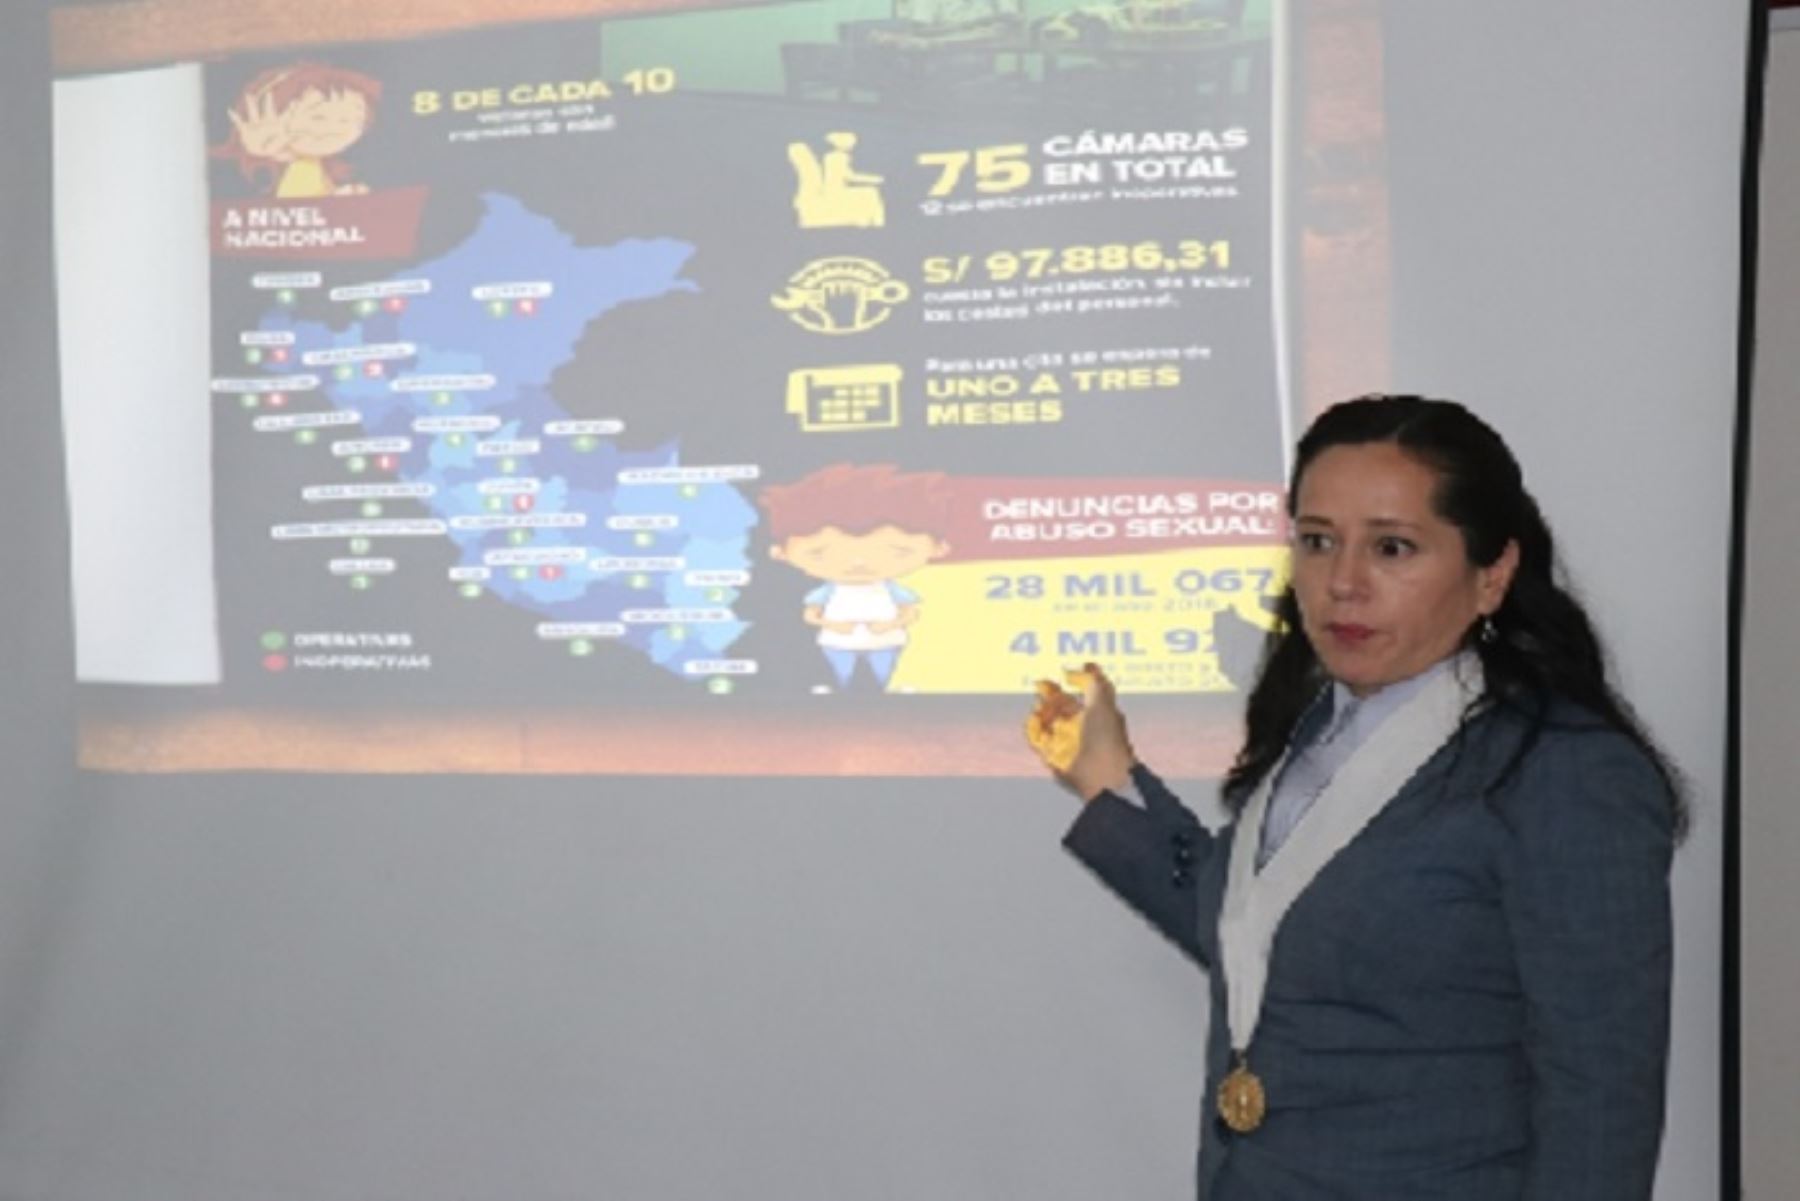 La jueza del Primer Juzgado de Familia de Huancayo, Teresa Cárdenas, emplea el uso de WhatsApp para hacer seguimiento a procesos de tenencia, régimen de visitas, tutela, ejecución de acta de conciliación y violencia intrafamiliar.